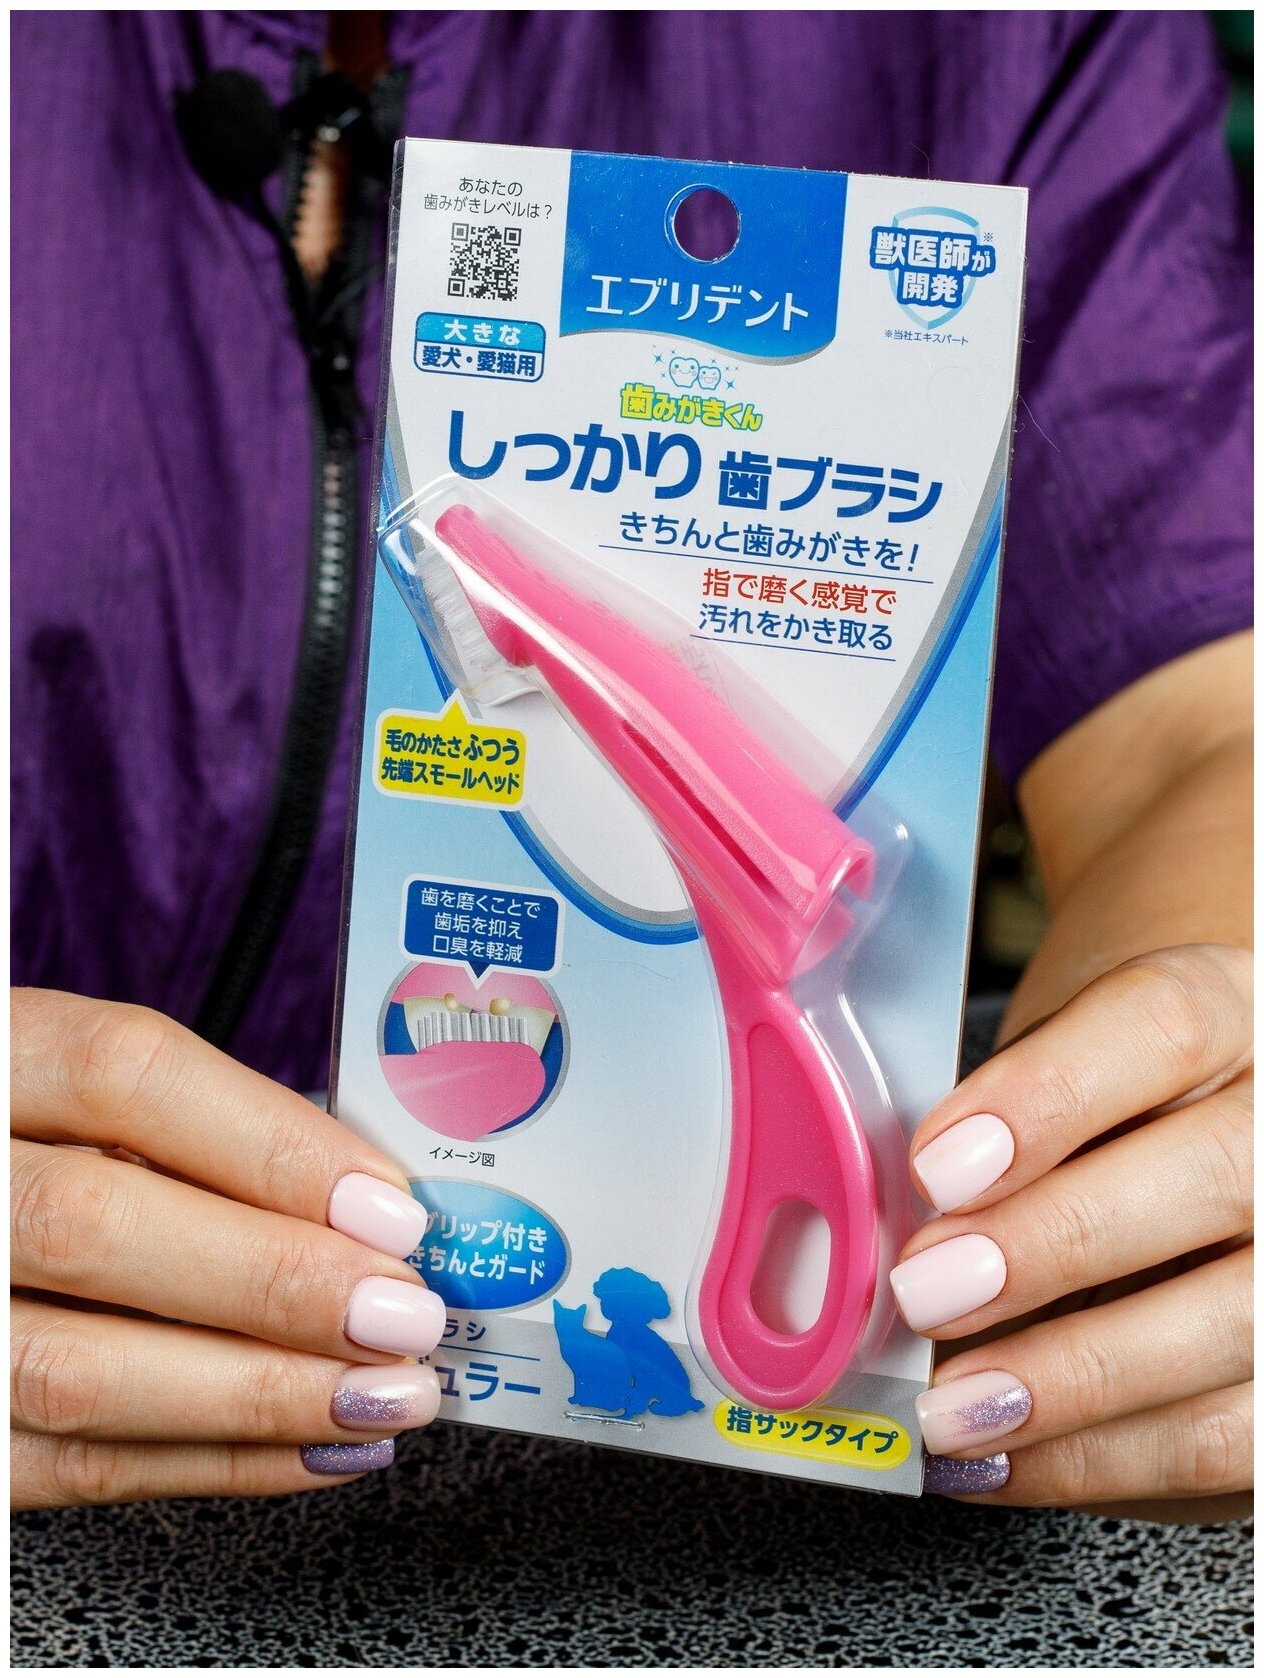 Зубная щетка для собак и кошек Japan Premium Pet анатомическая с ручкой для снятия налета, цвет розовый. - фотография № 2